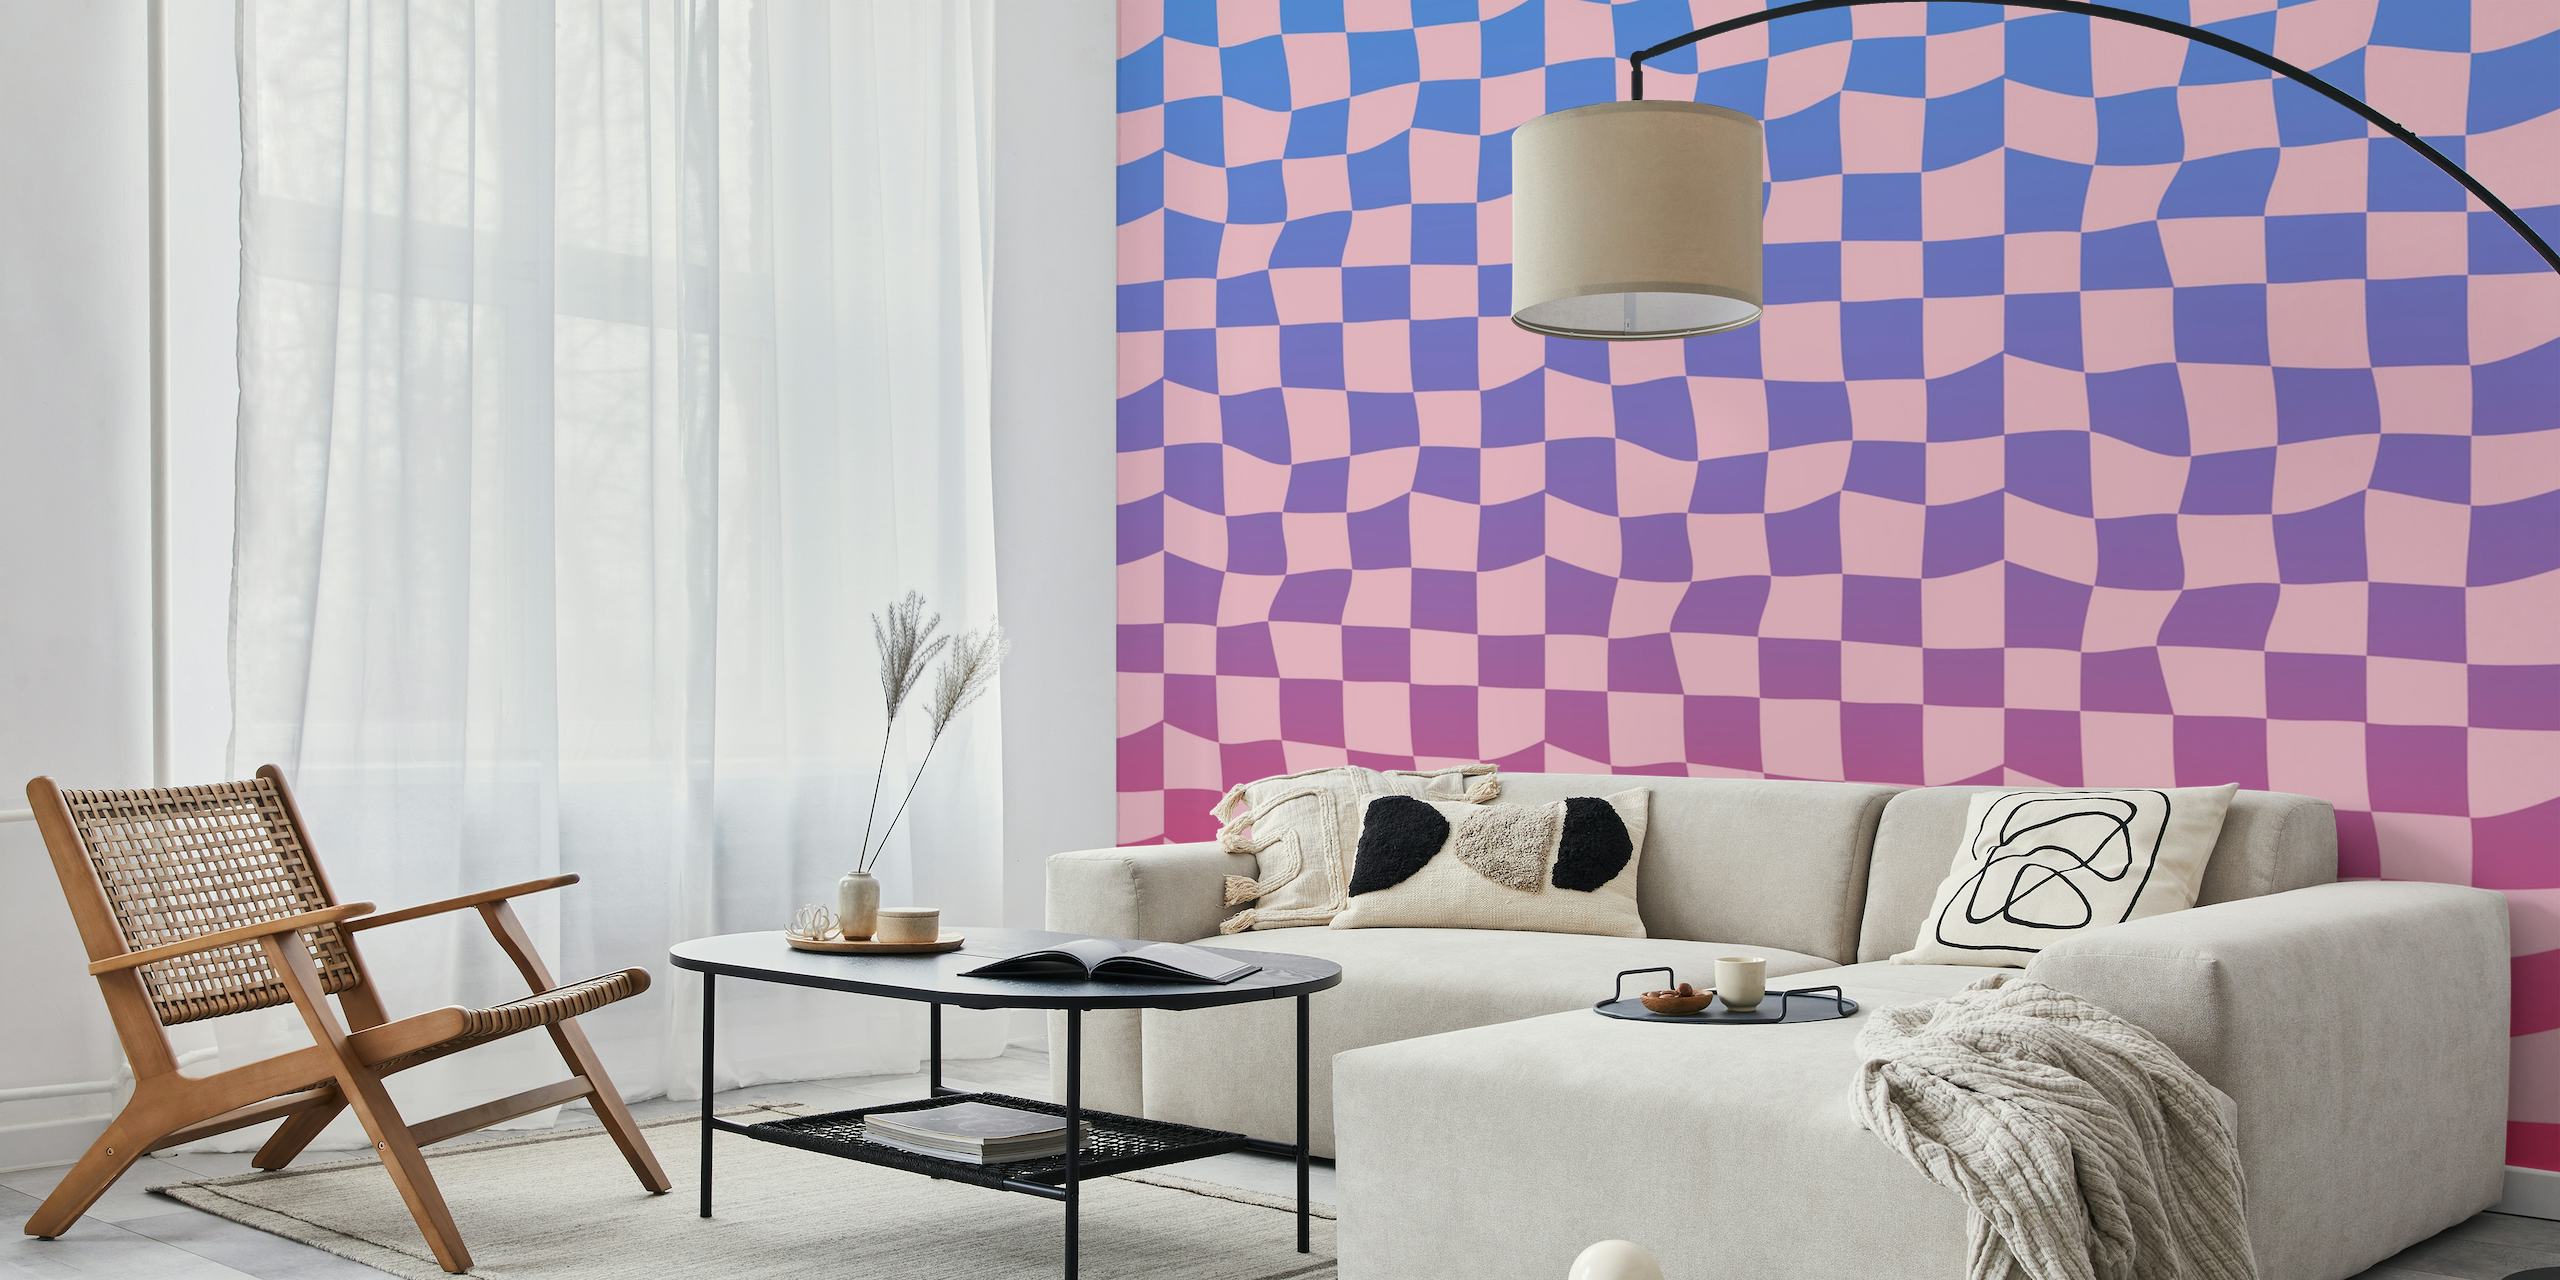 Checkered Pink Theme papel pintado